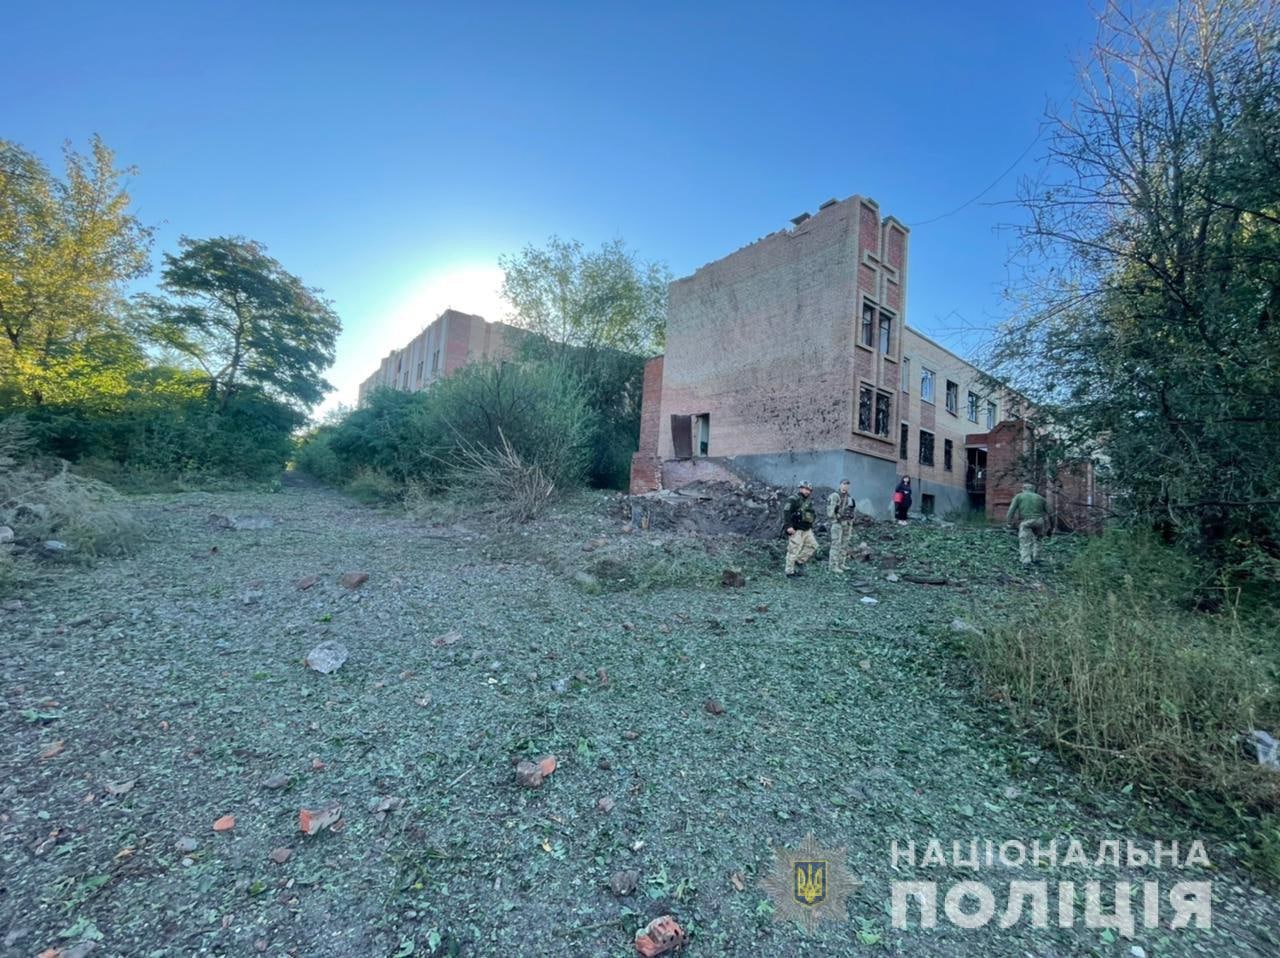 розбомблений цивільний об'єкт в Донецькій області